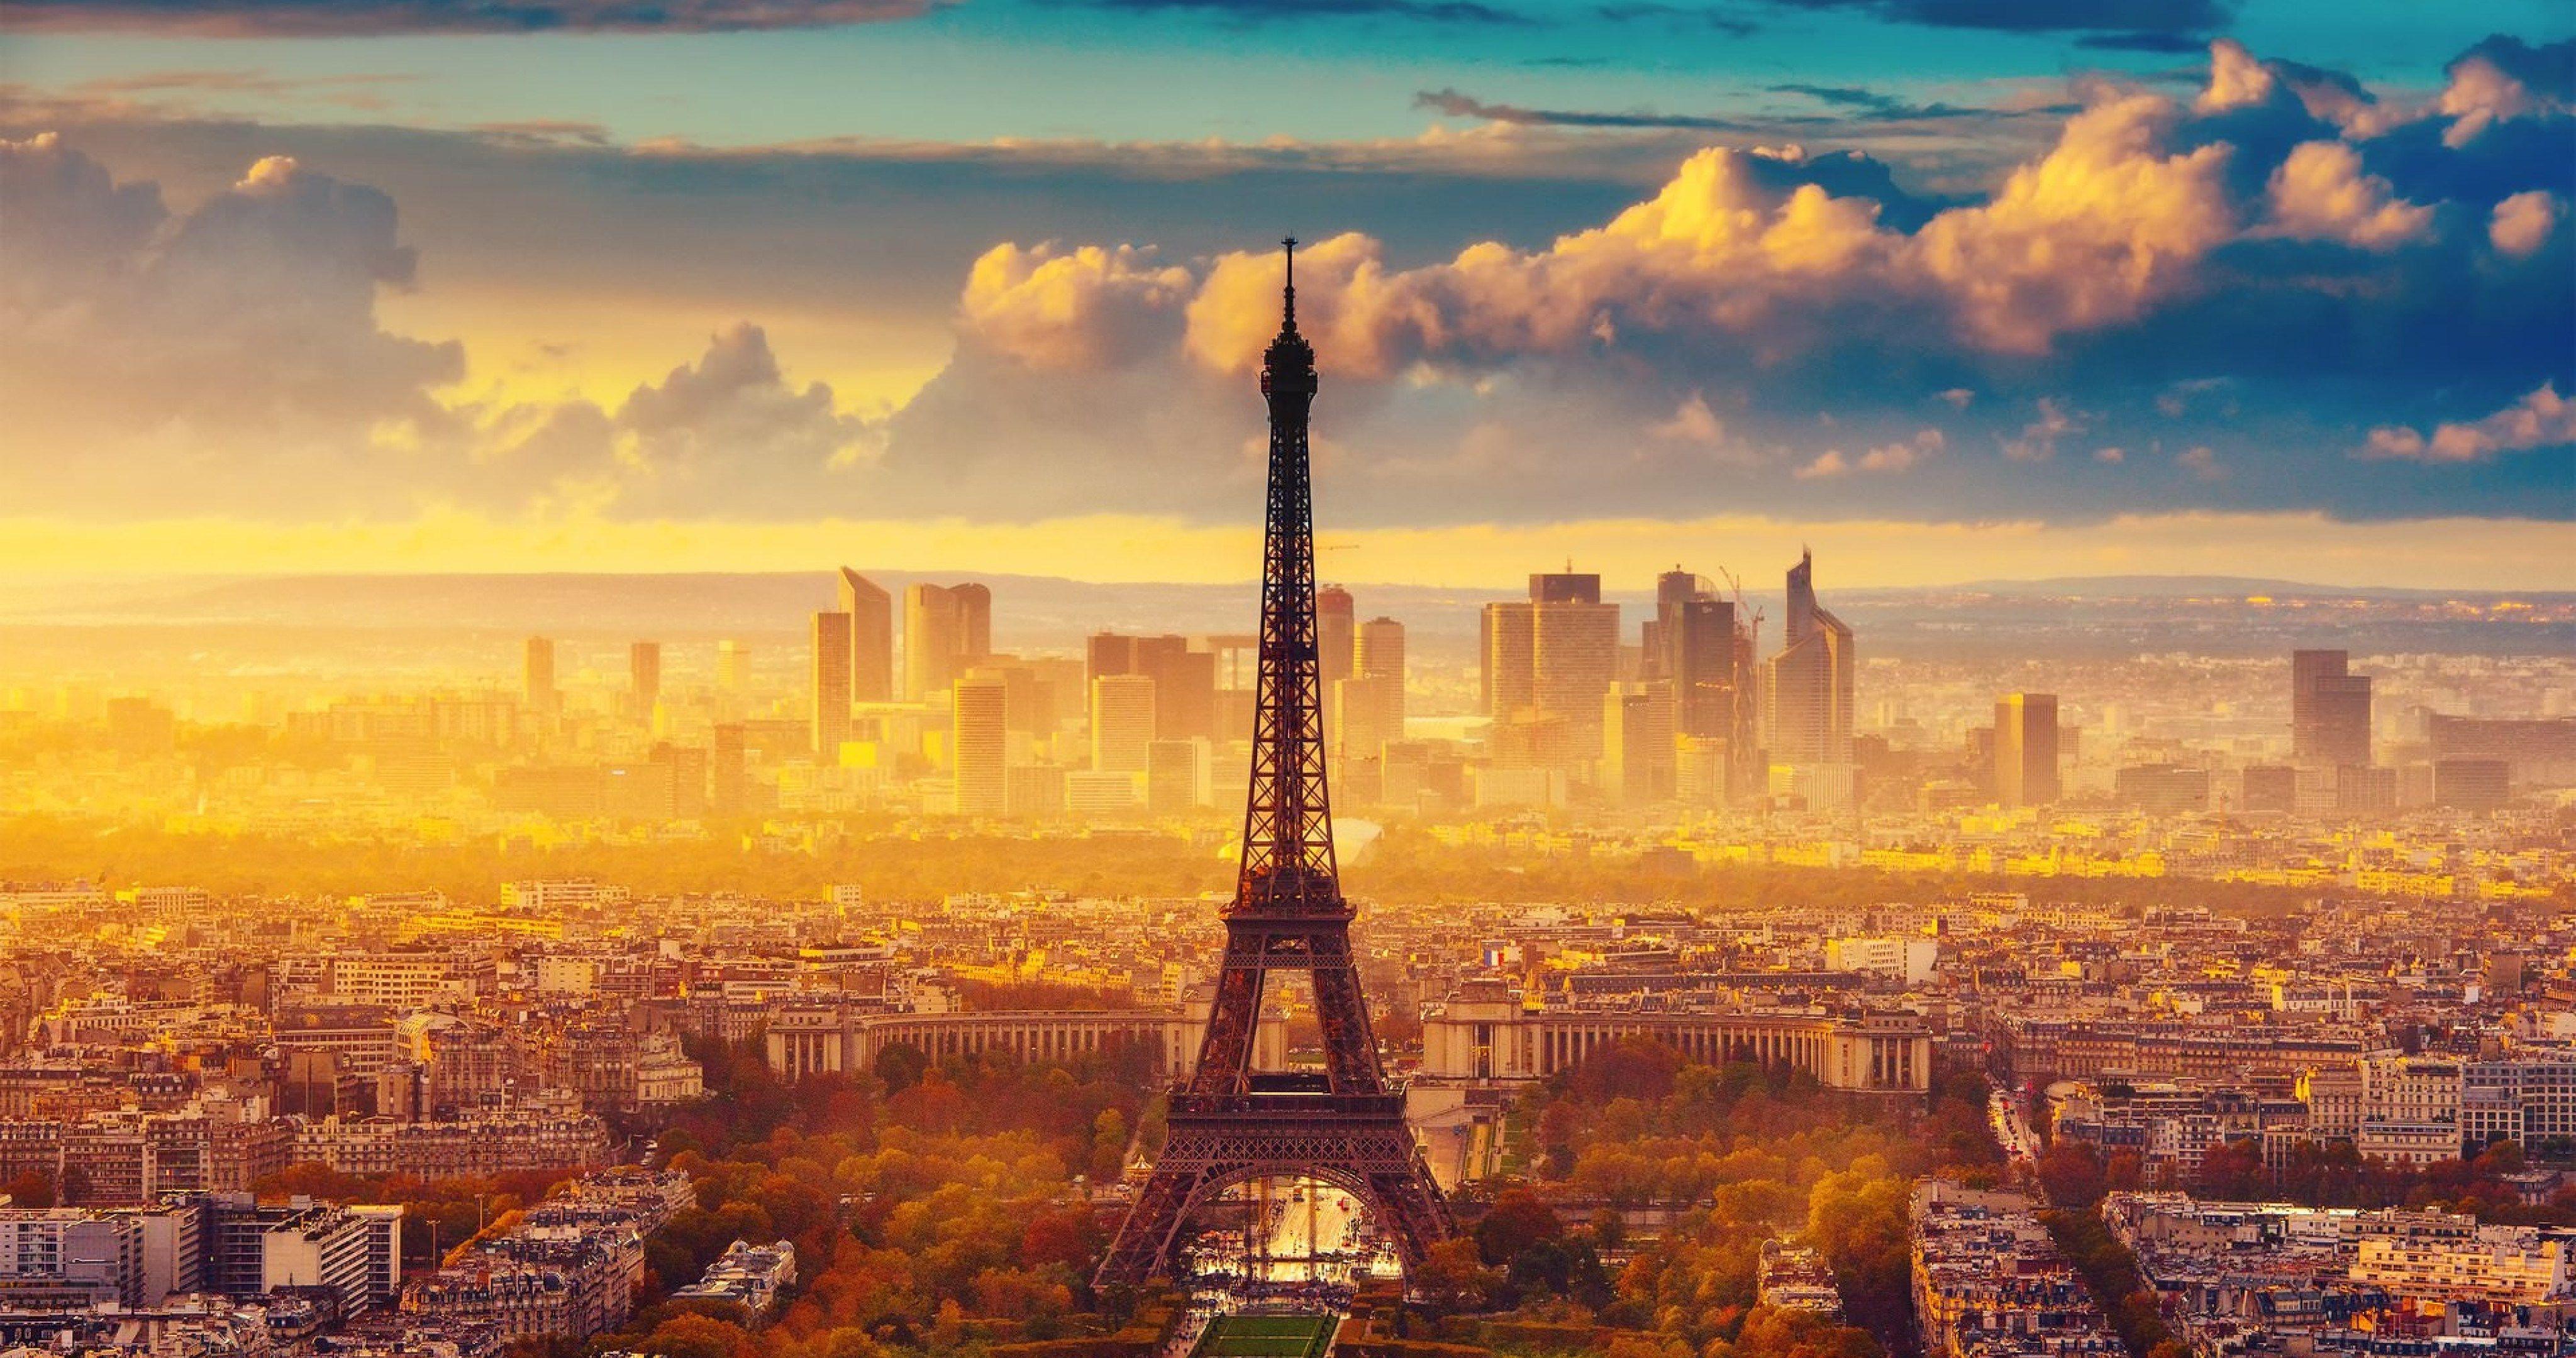 4096x2160 Tháp Eiffel Paris Cảnh thành phố 4k Hình nền Stress Buster